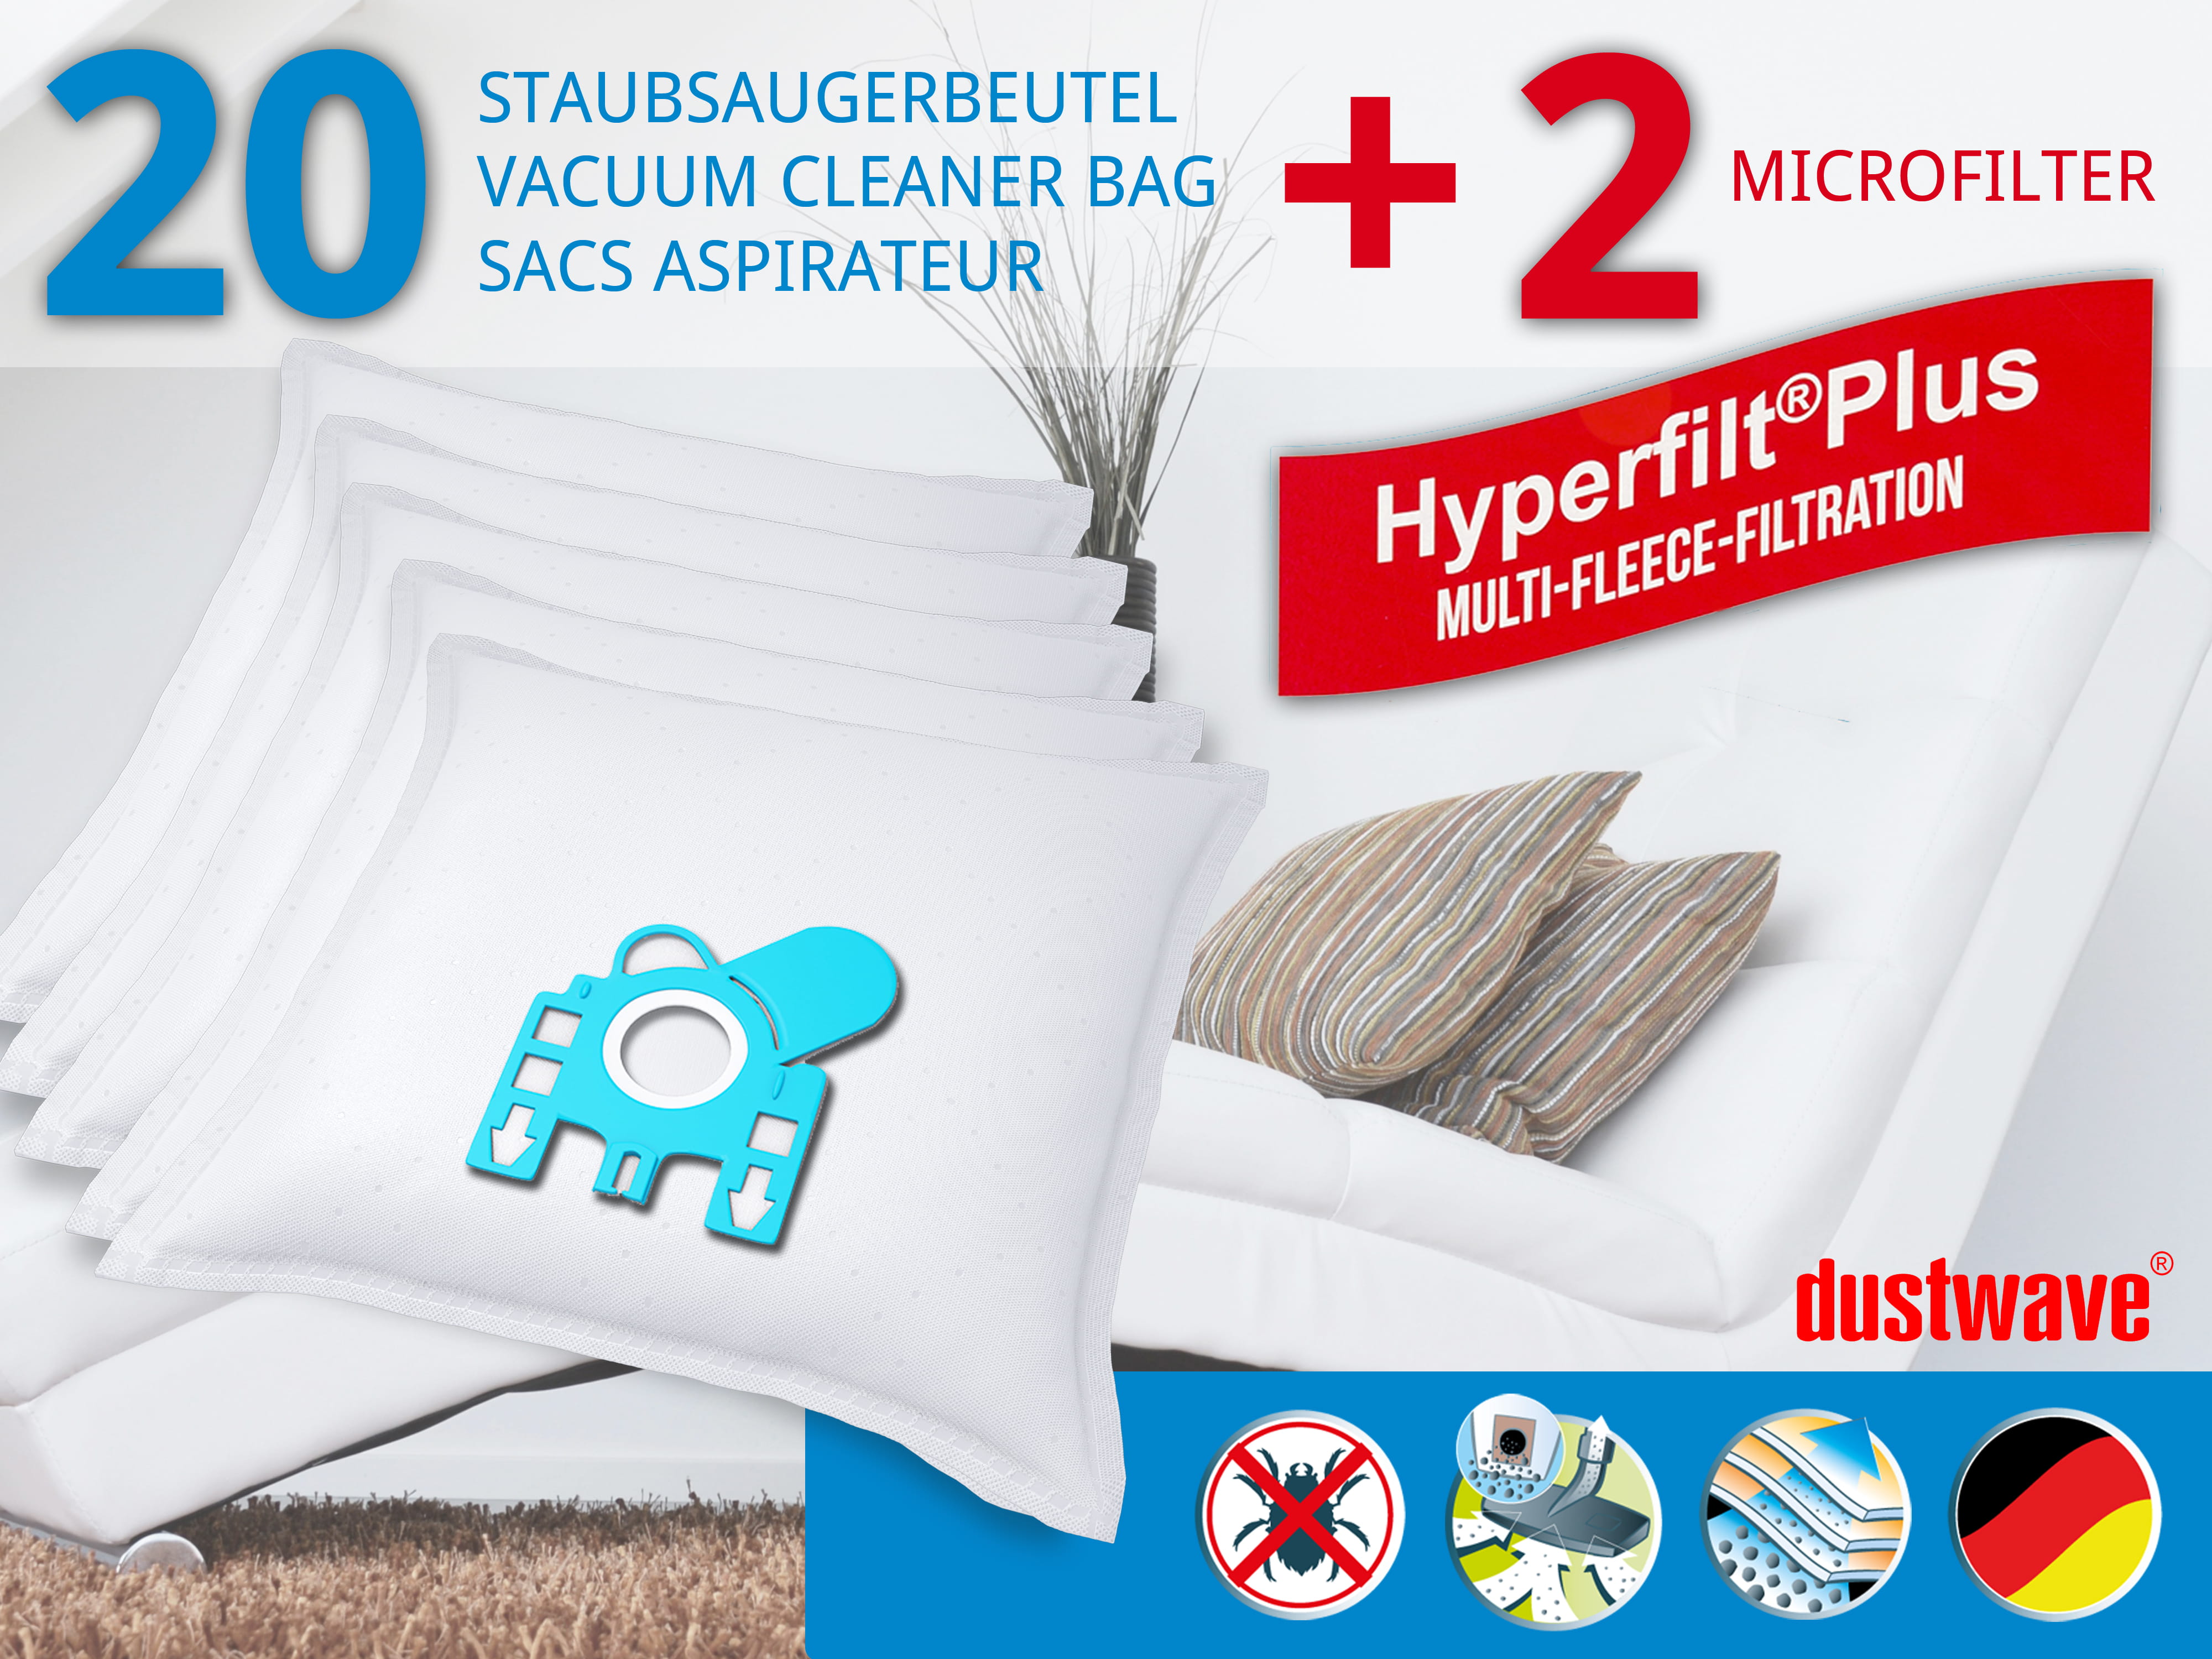 Dustwave® 20 Staubsaugerbeutel für Miele Xquisit - hocheffizient, mehrlagiges Mikrovlies mit Hygieneverschluss - Made in Germany